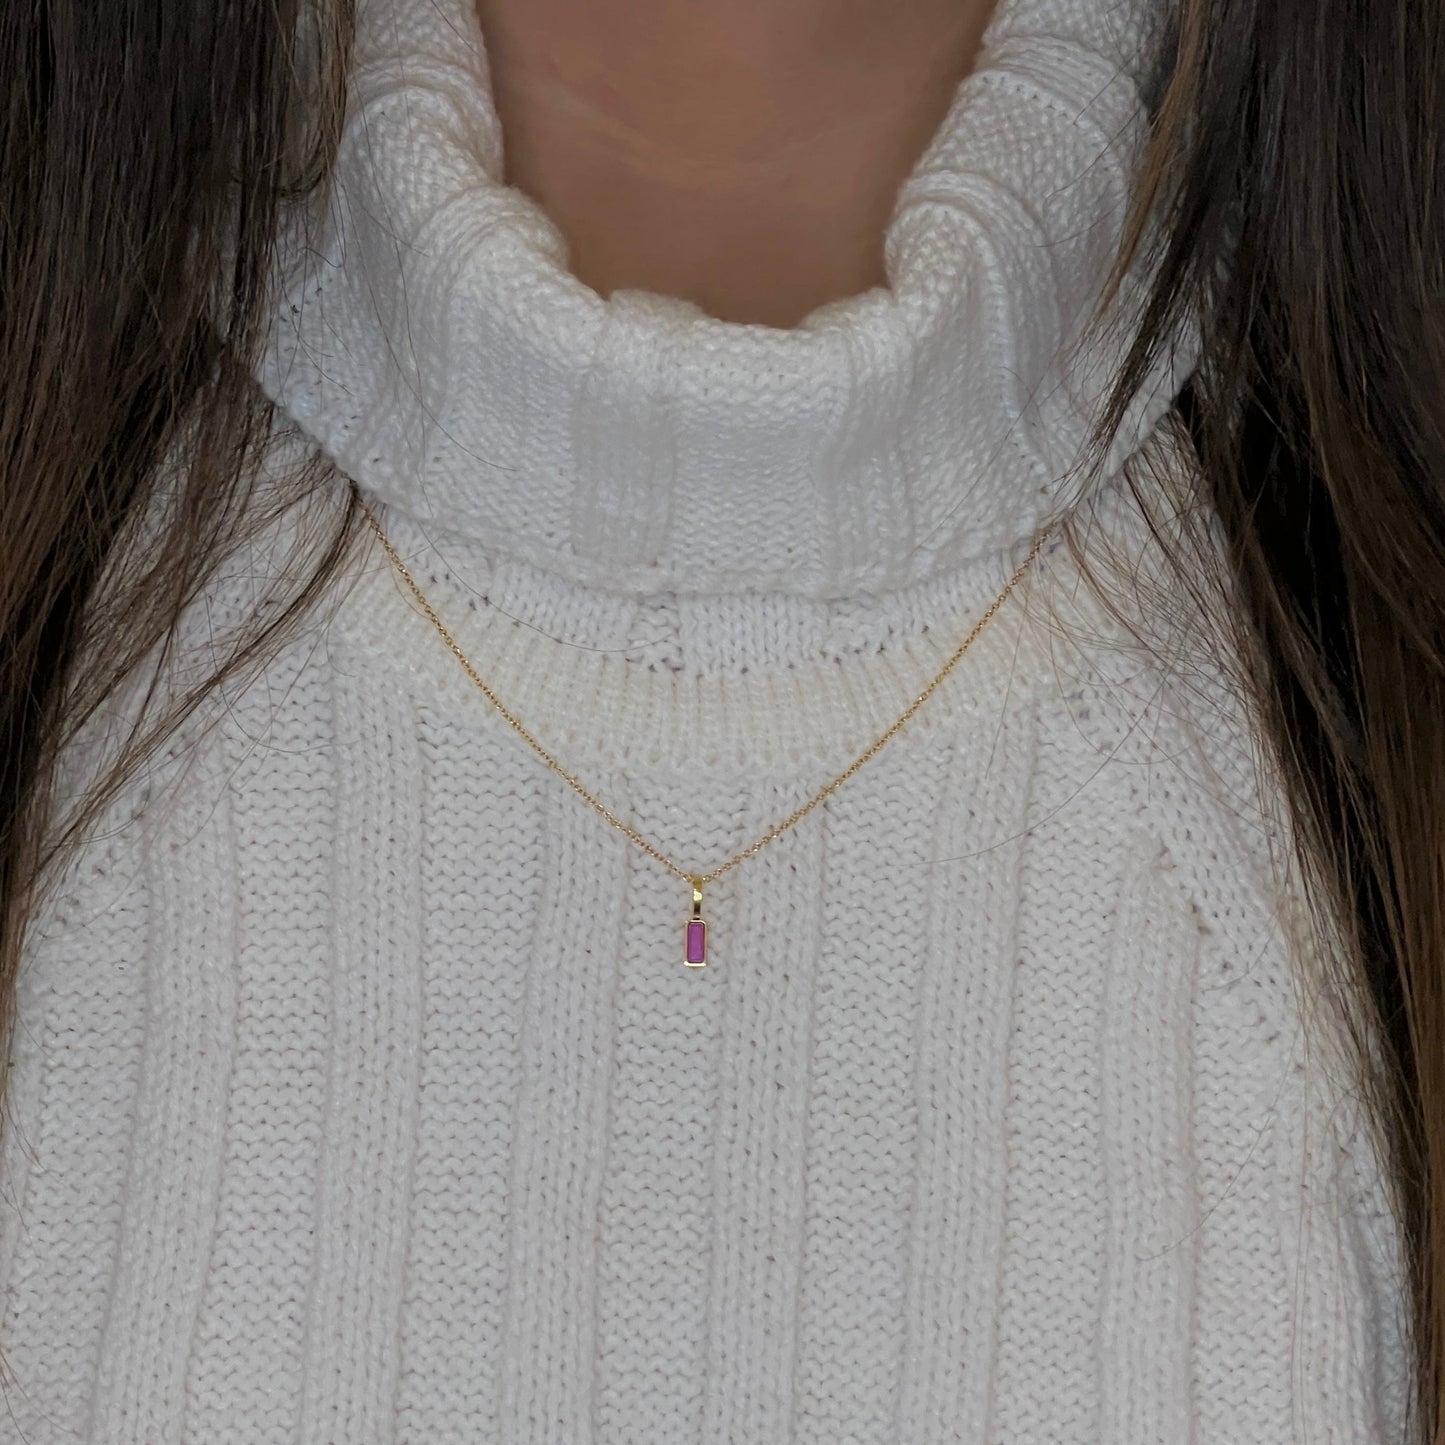 Birthstone Necklace - Namaste Jewelry Canada